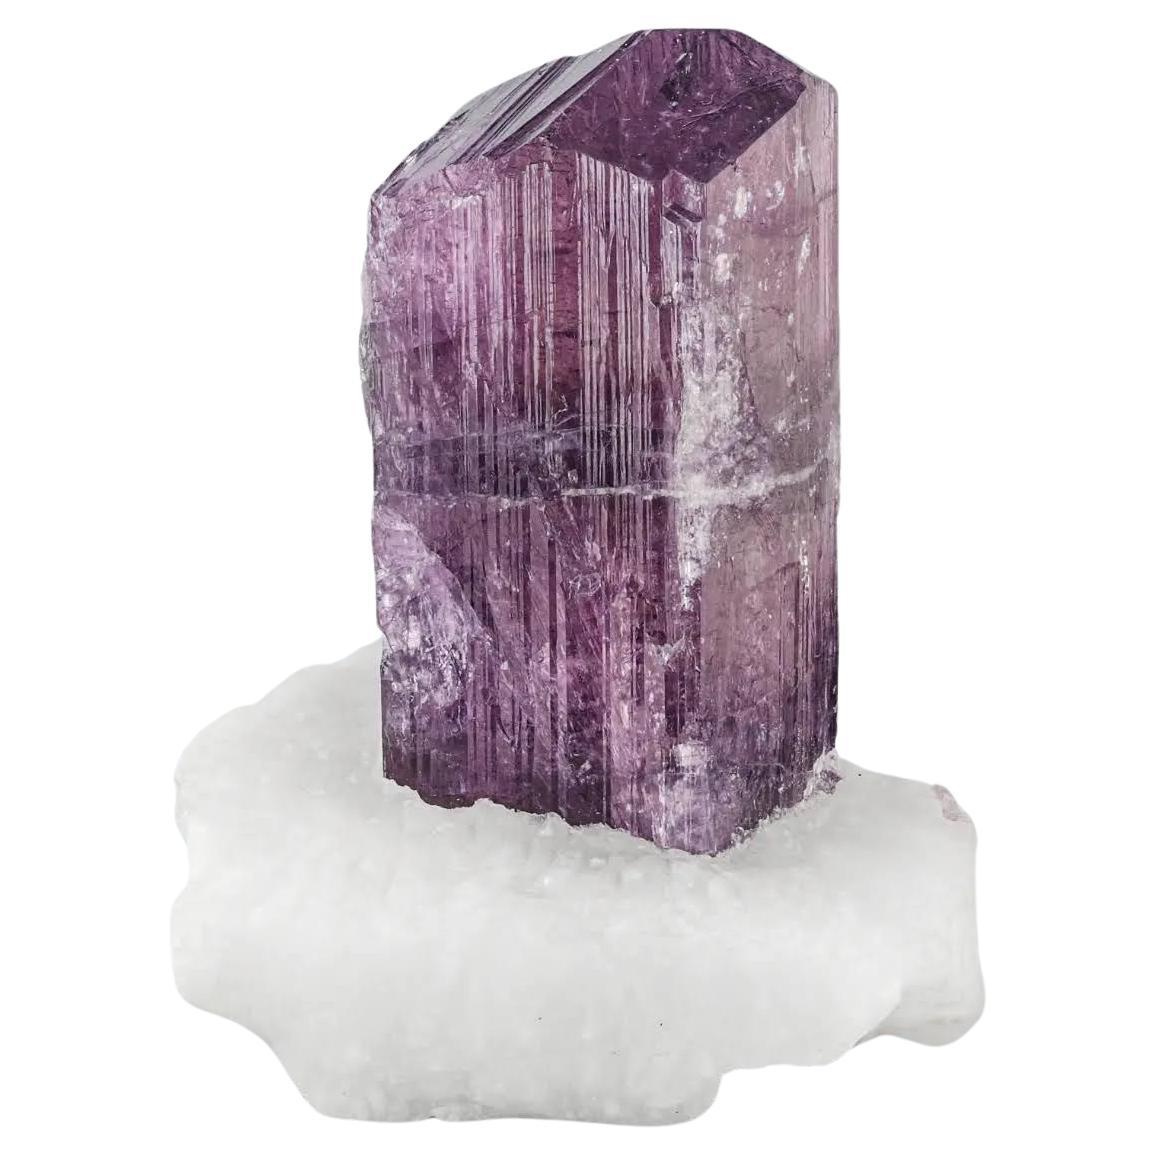 Cristal de scapolite de couleur violette sur matrice de calcite provenant d'Afghanistan